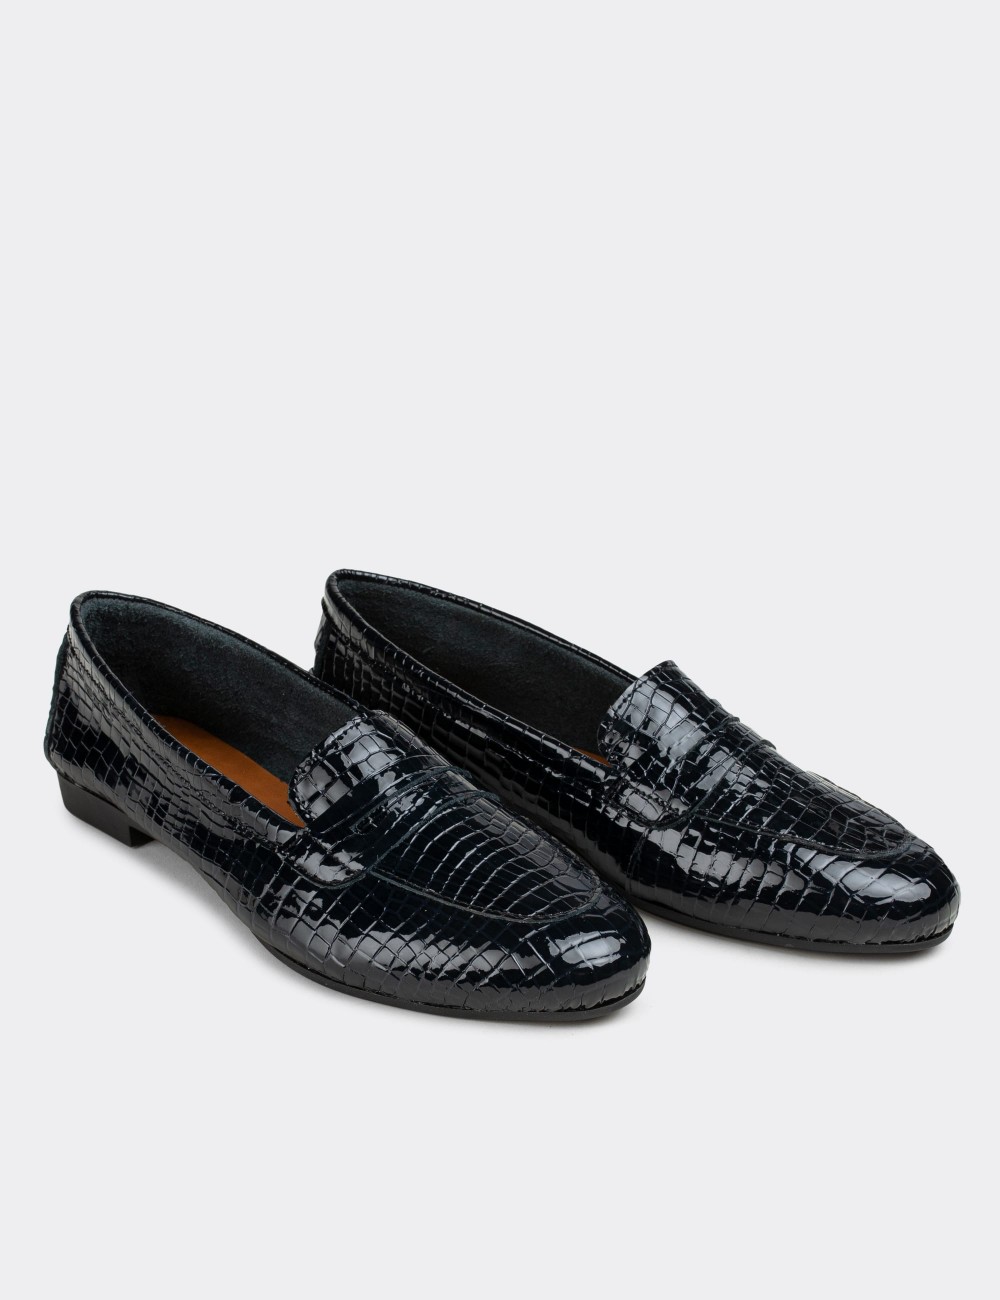 Navy Patent Leather Loafers  - E3202ZLCVC05